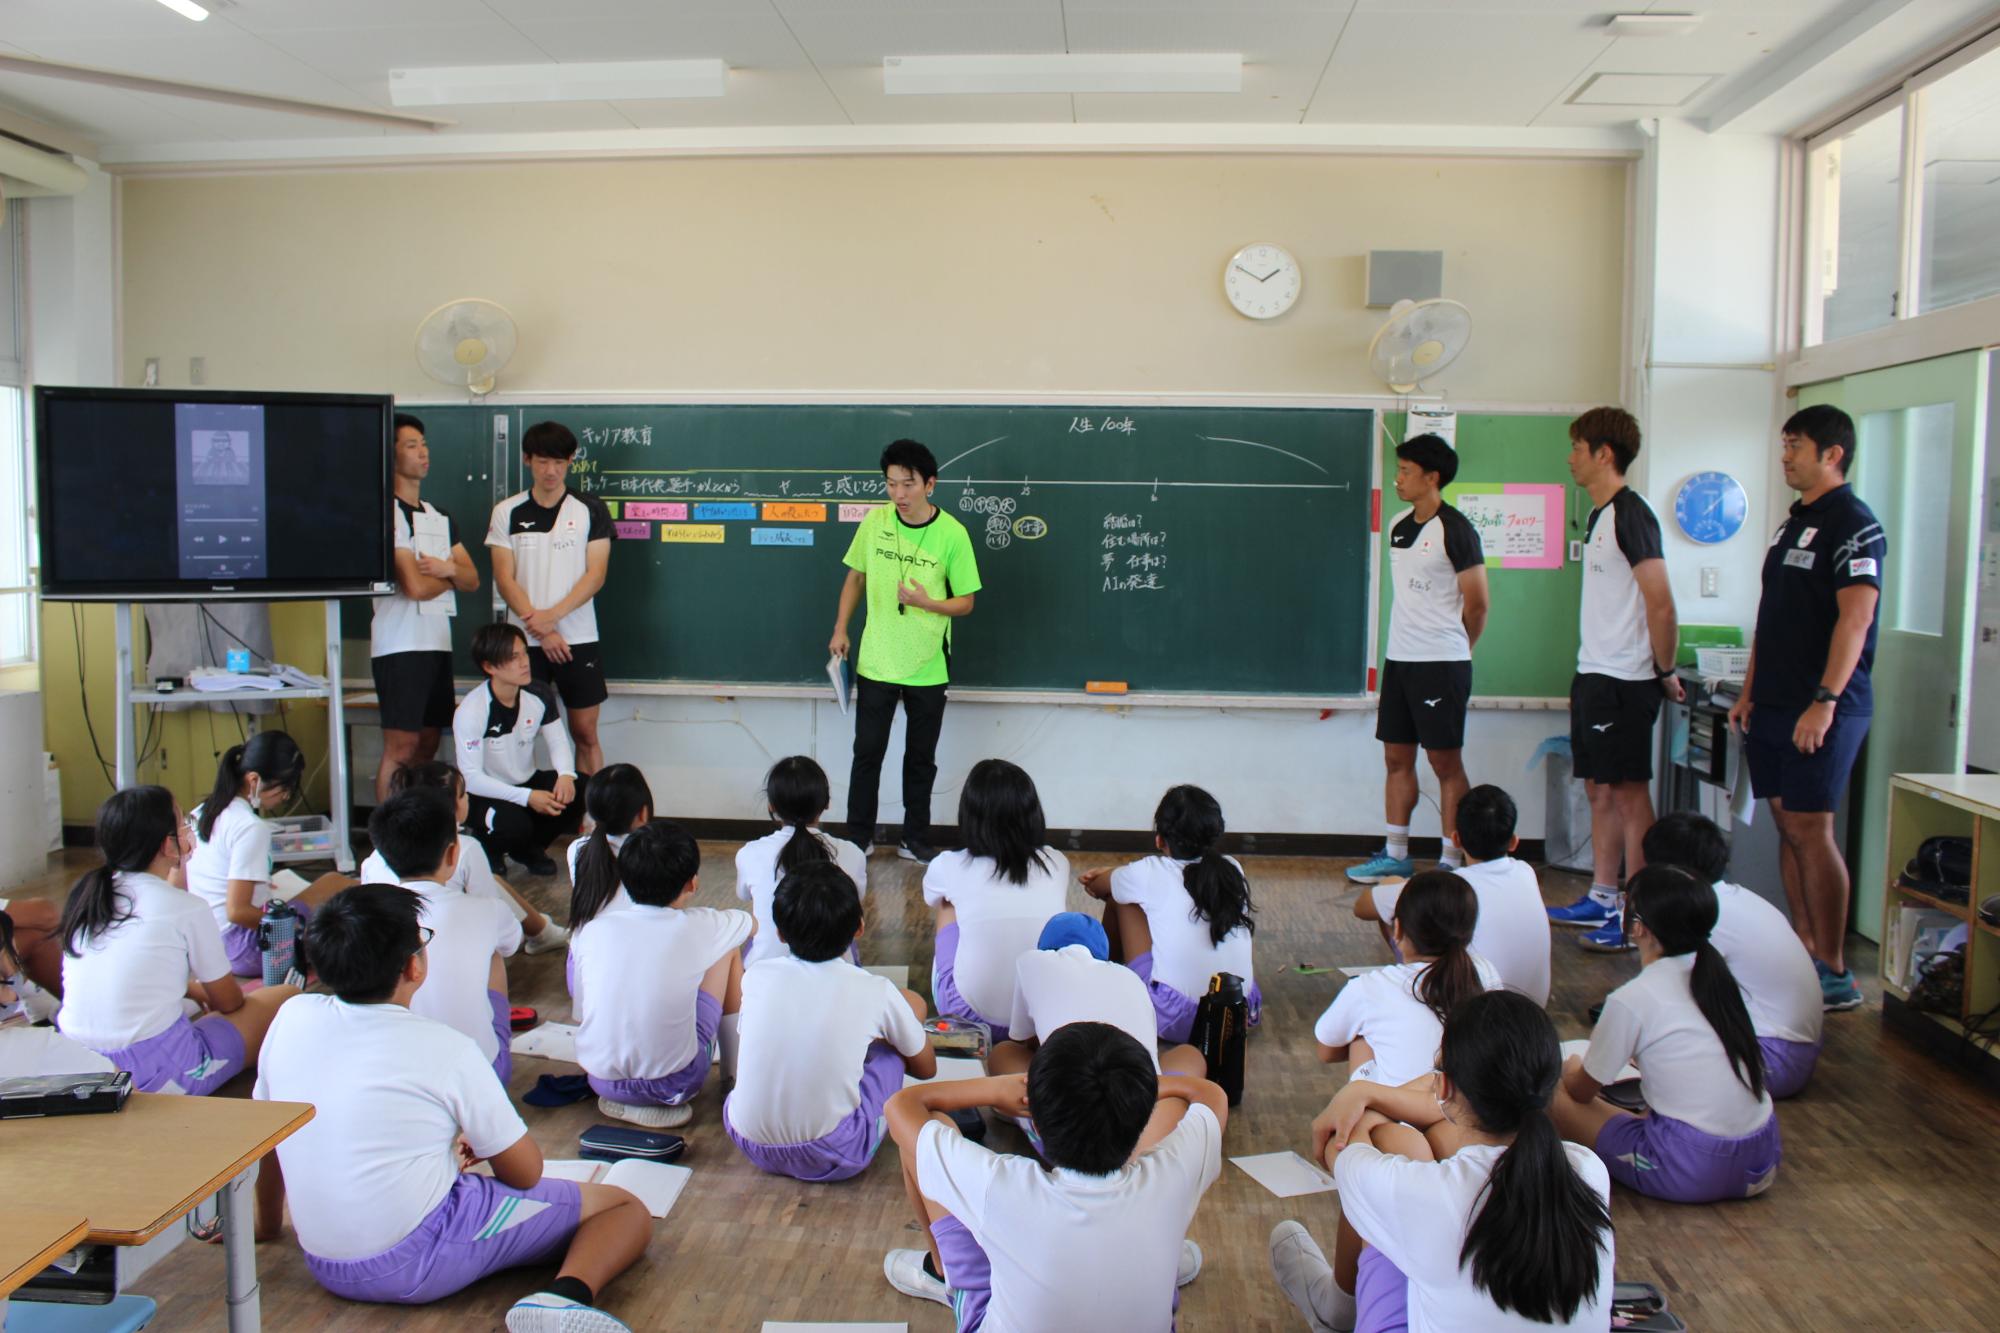 キャリア教育で日本代表選手やスタッフから話を聞く6年生